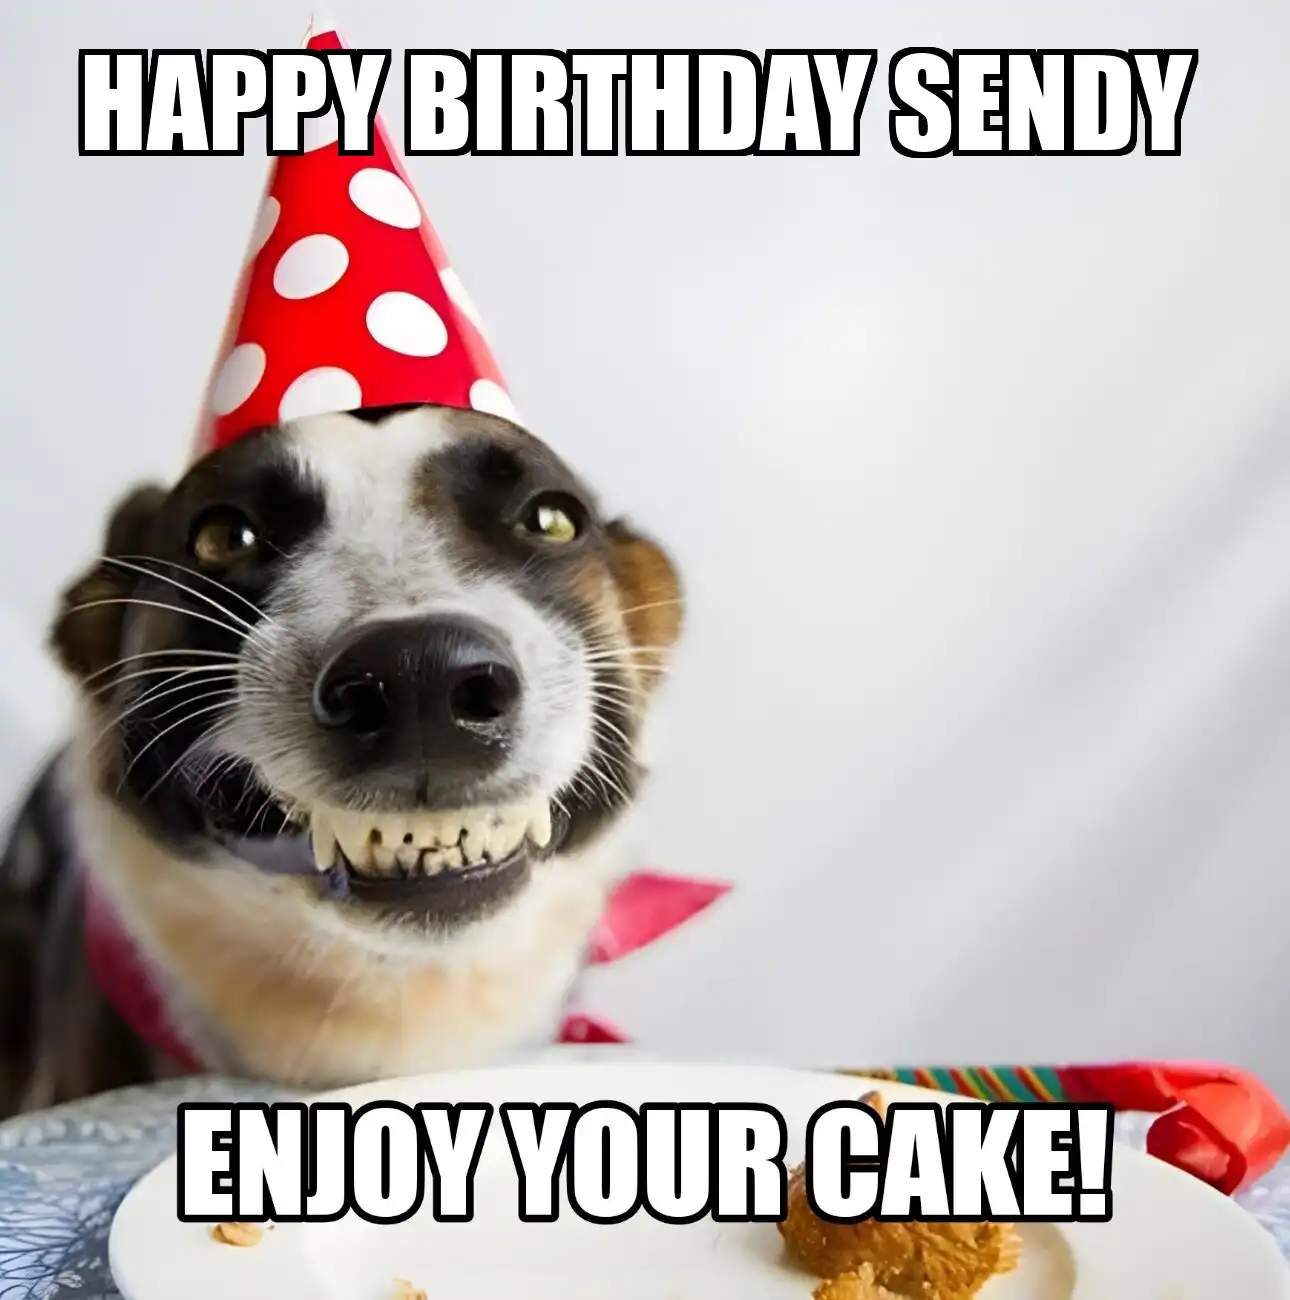 Happy Birthday Sendy Enjoy Your Cake Dog Meme